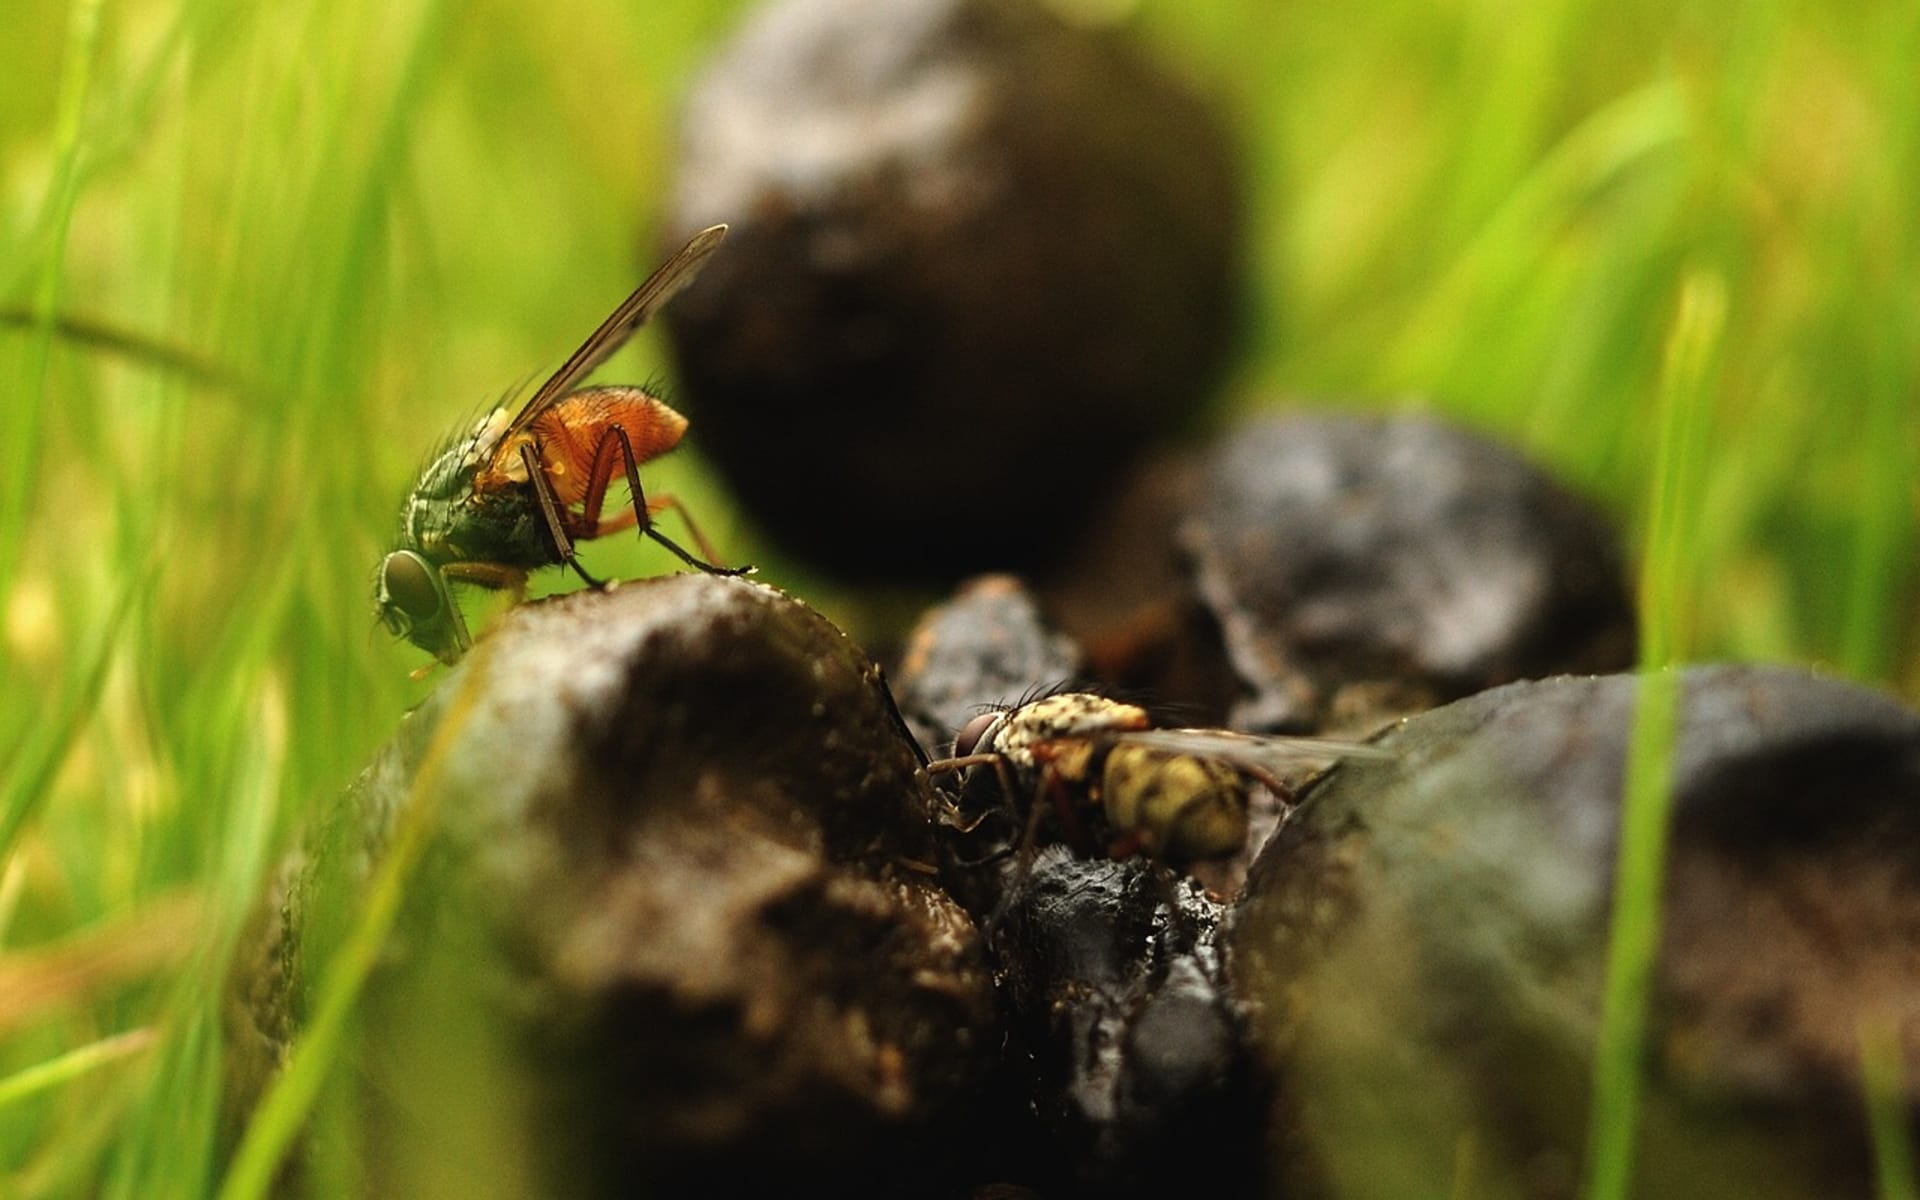 výkaly - budoucí zdroj energie nejen pro hmyz?